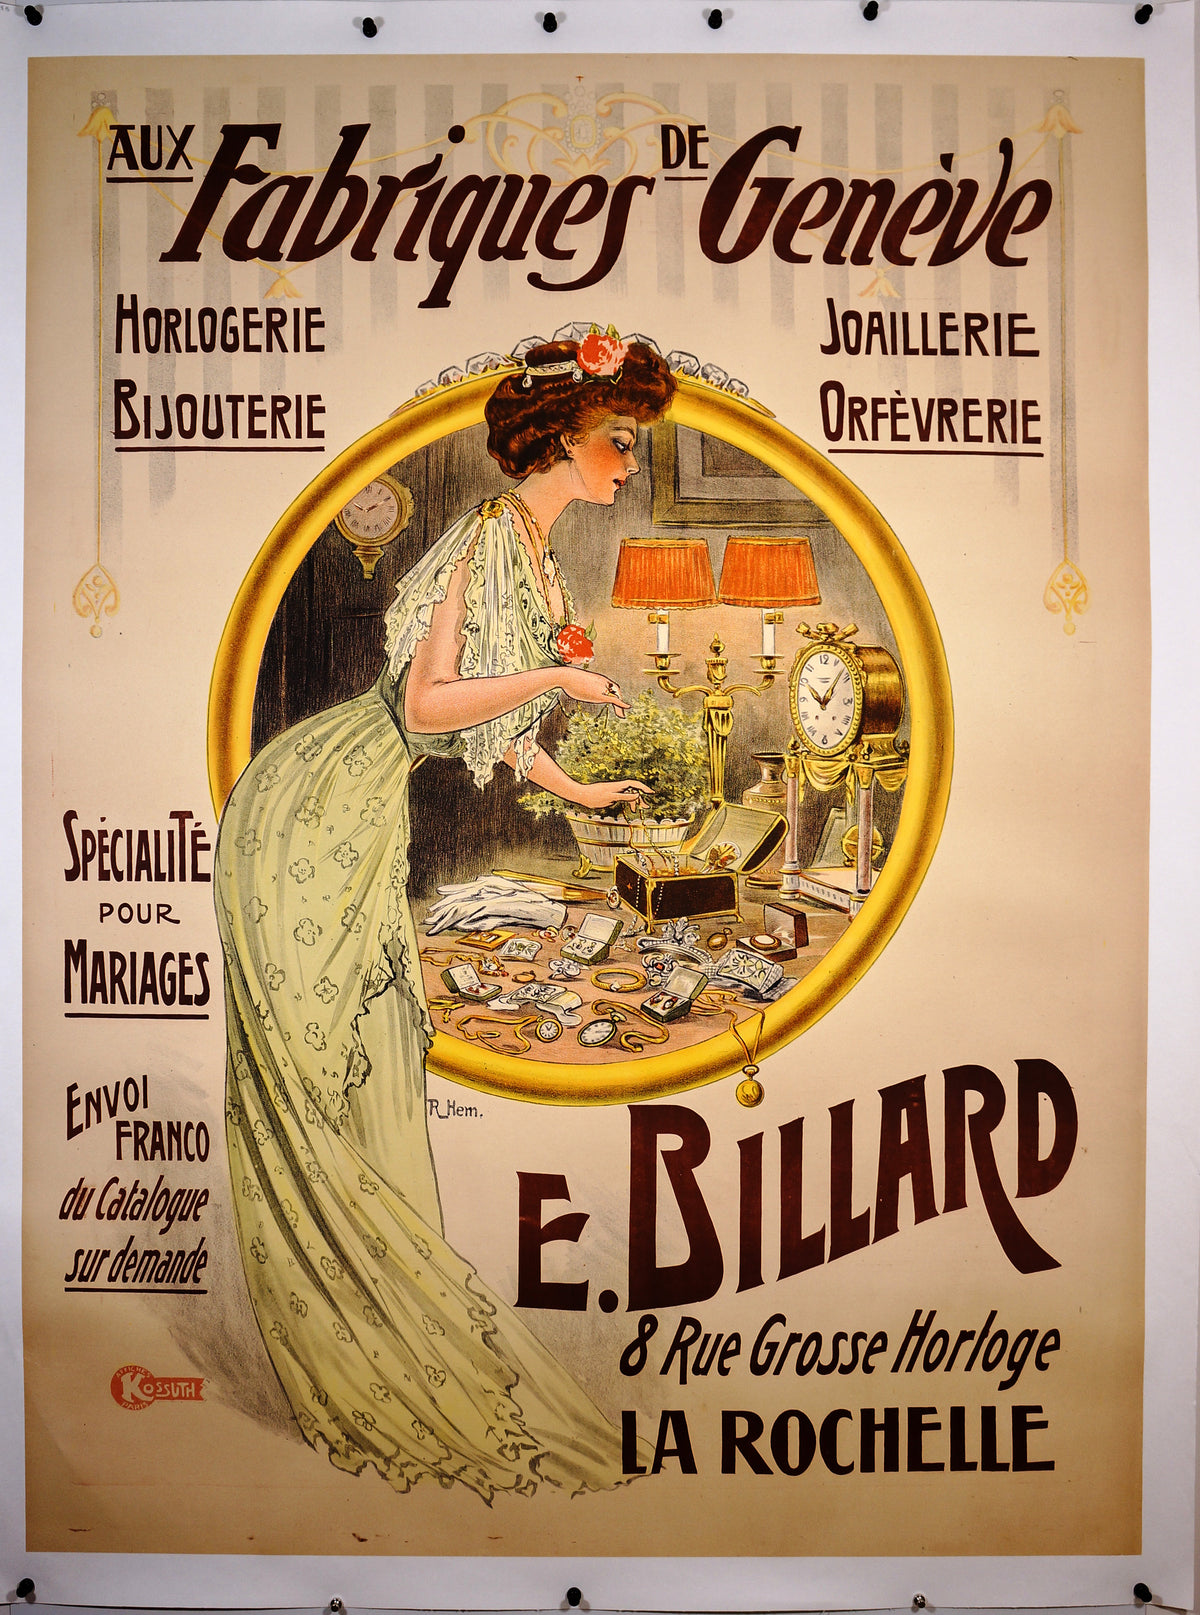 Fabriques Geneve - Authentic Vintage Poster